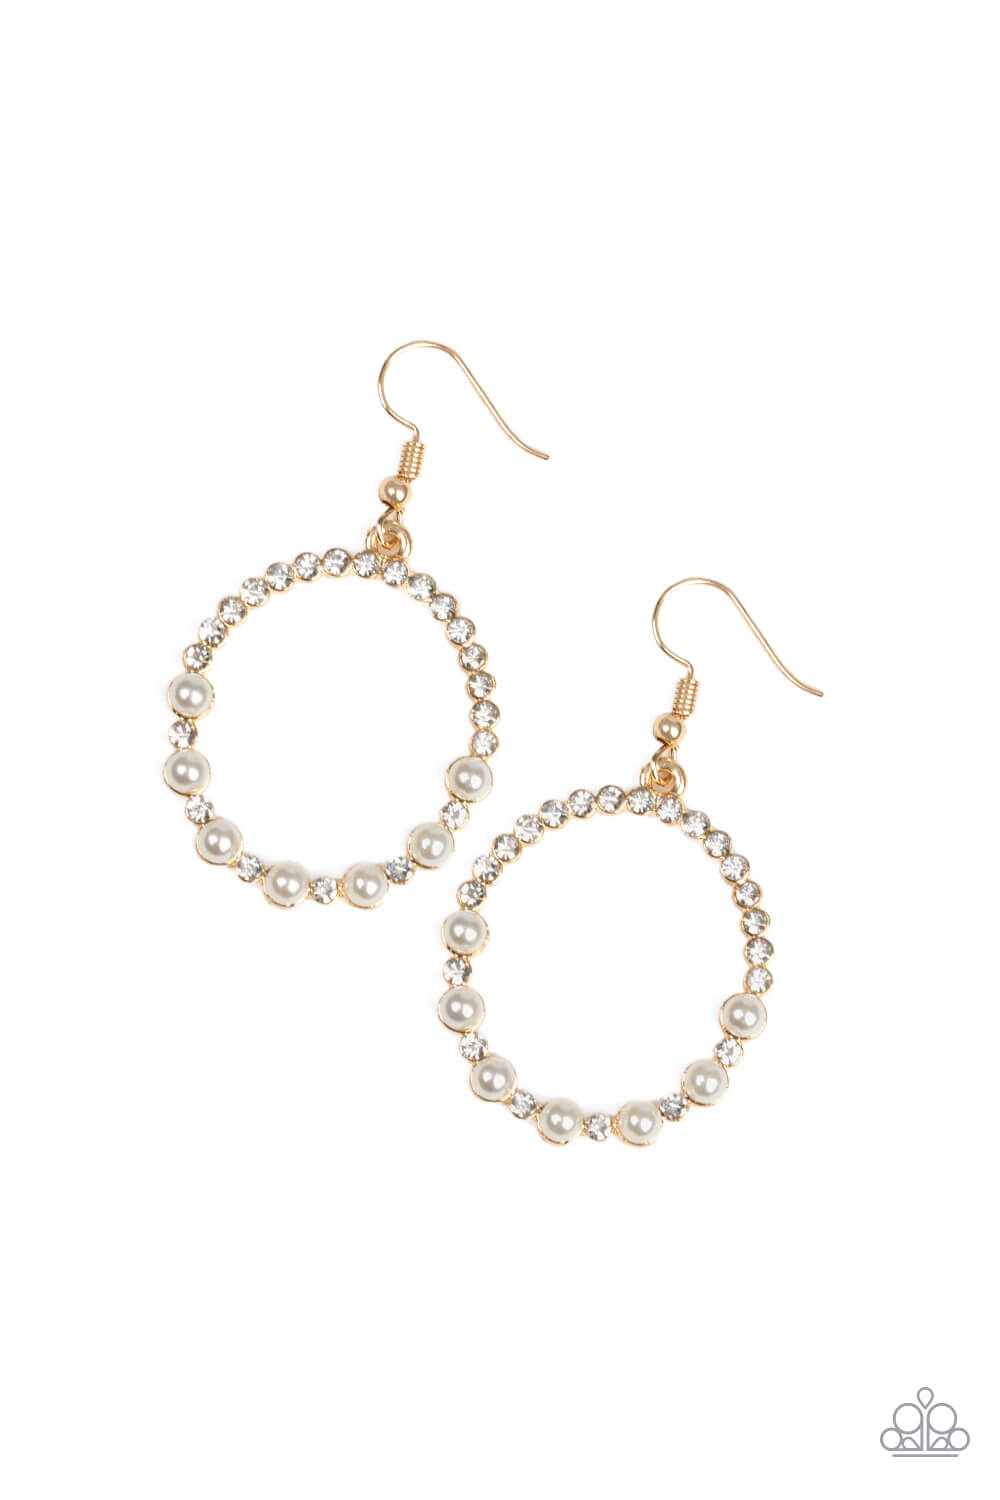 Glowing Grandeur - Gold & White Earrings - Princess Glam Shop